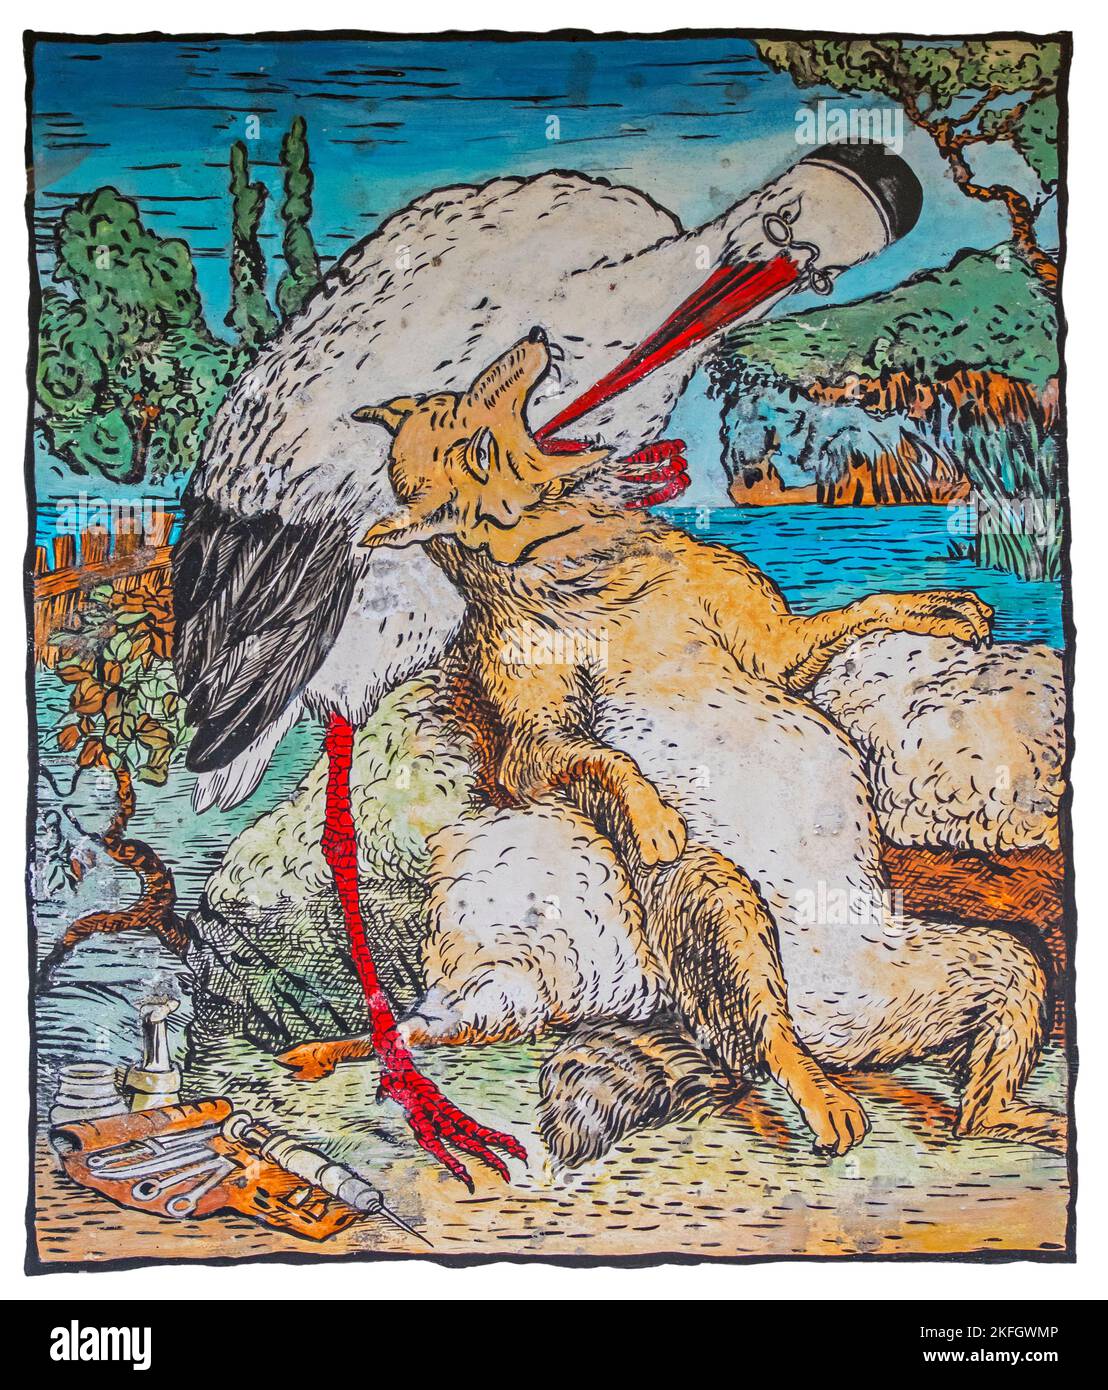 Le Loup et la Cigogne / le Loup et la grue, illustration de l'illustrateur français Grandville dans le livre Fables de Jean de la Fontaine Banque D'Images